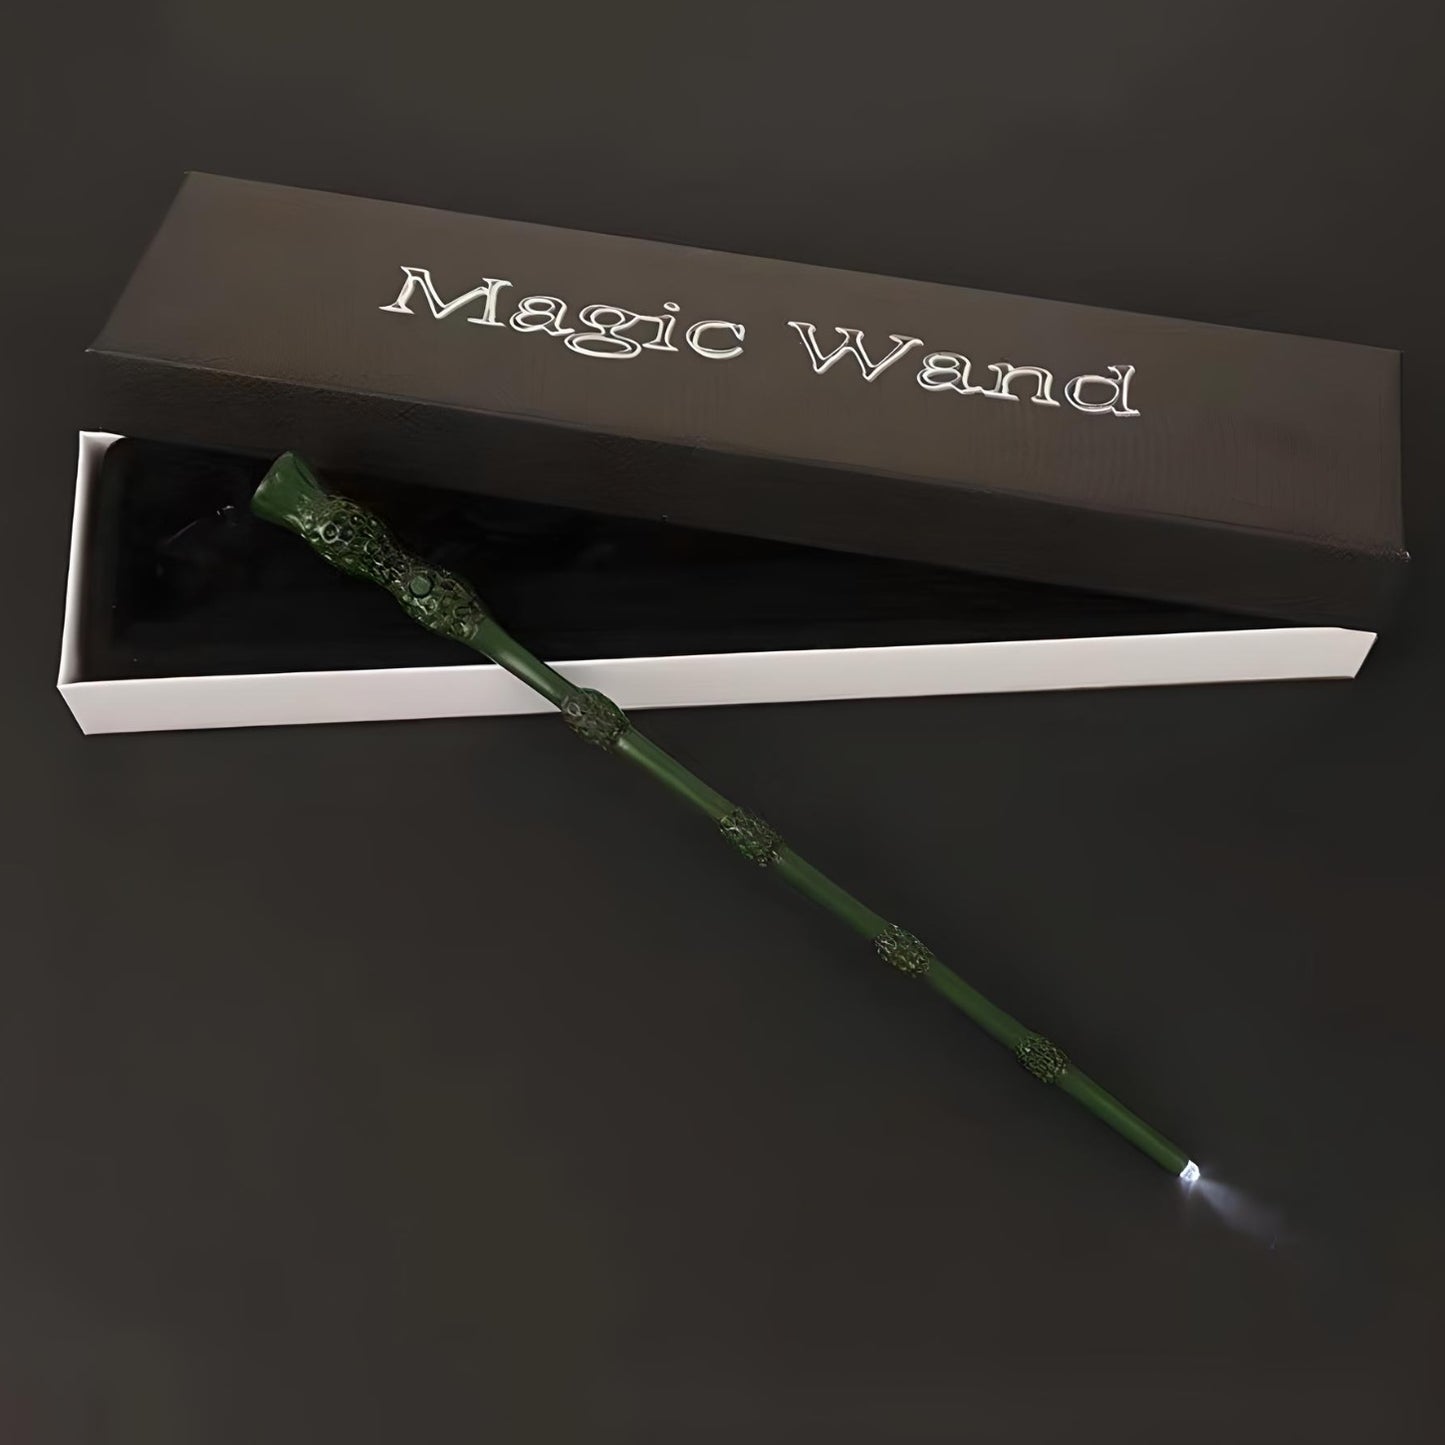 Light Up Wizard Spell Wand - Dumbledore